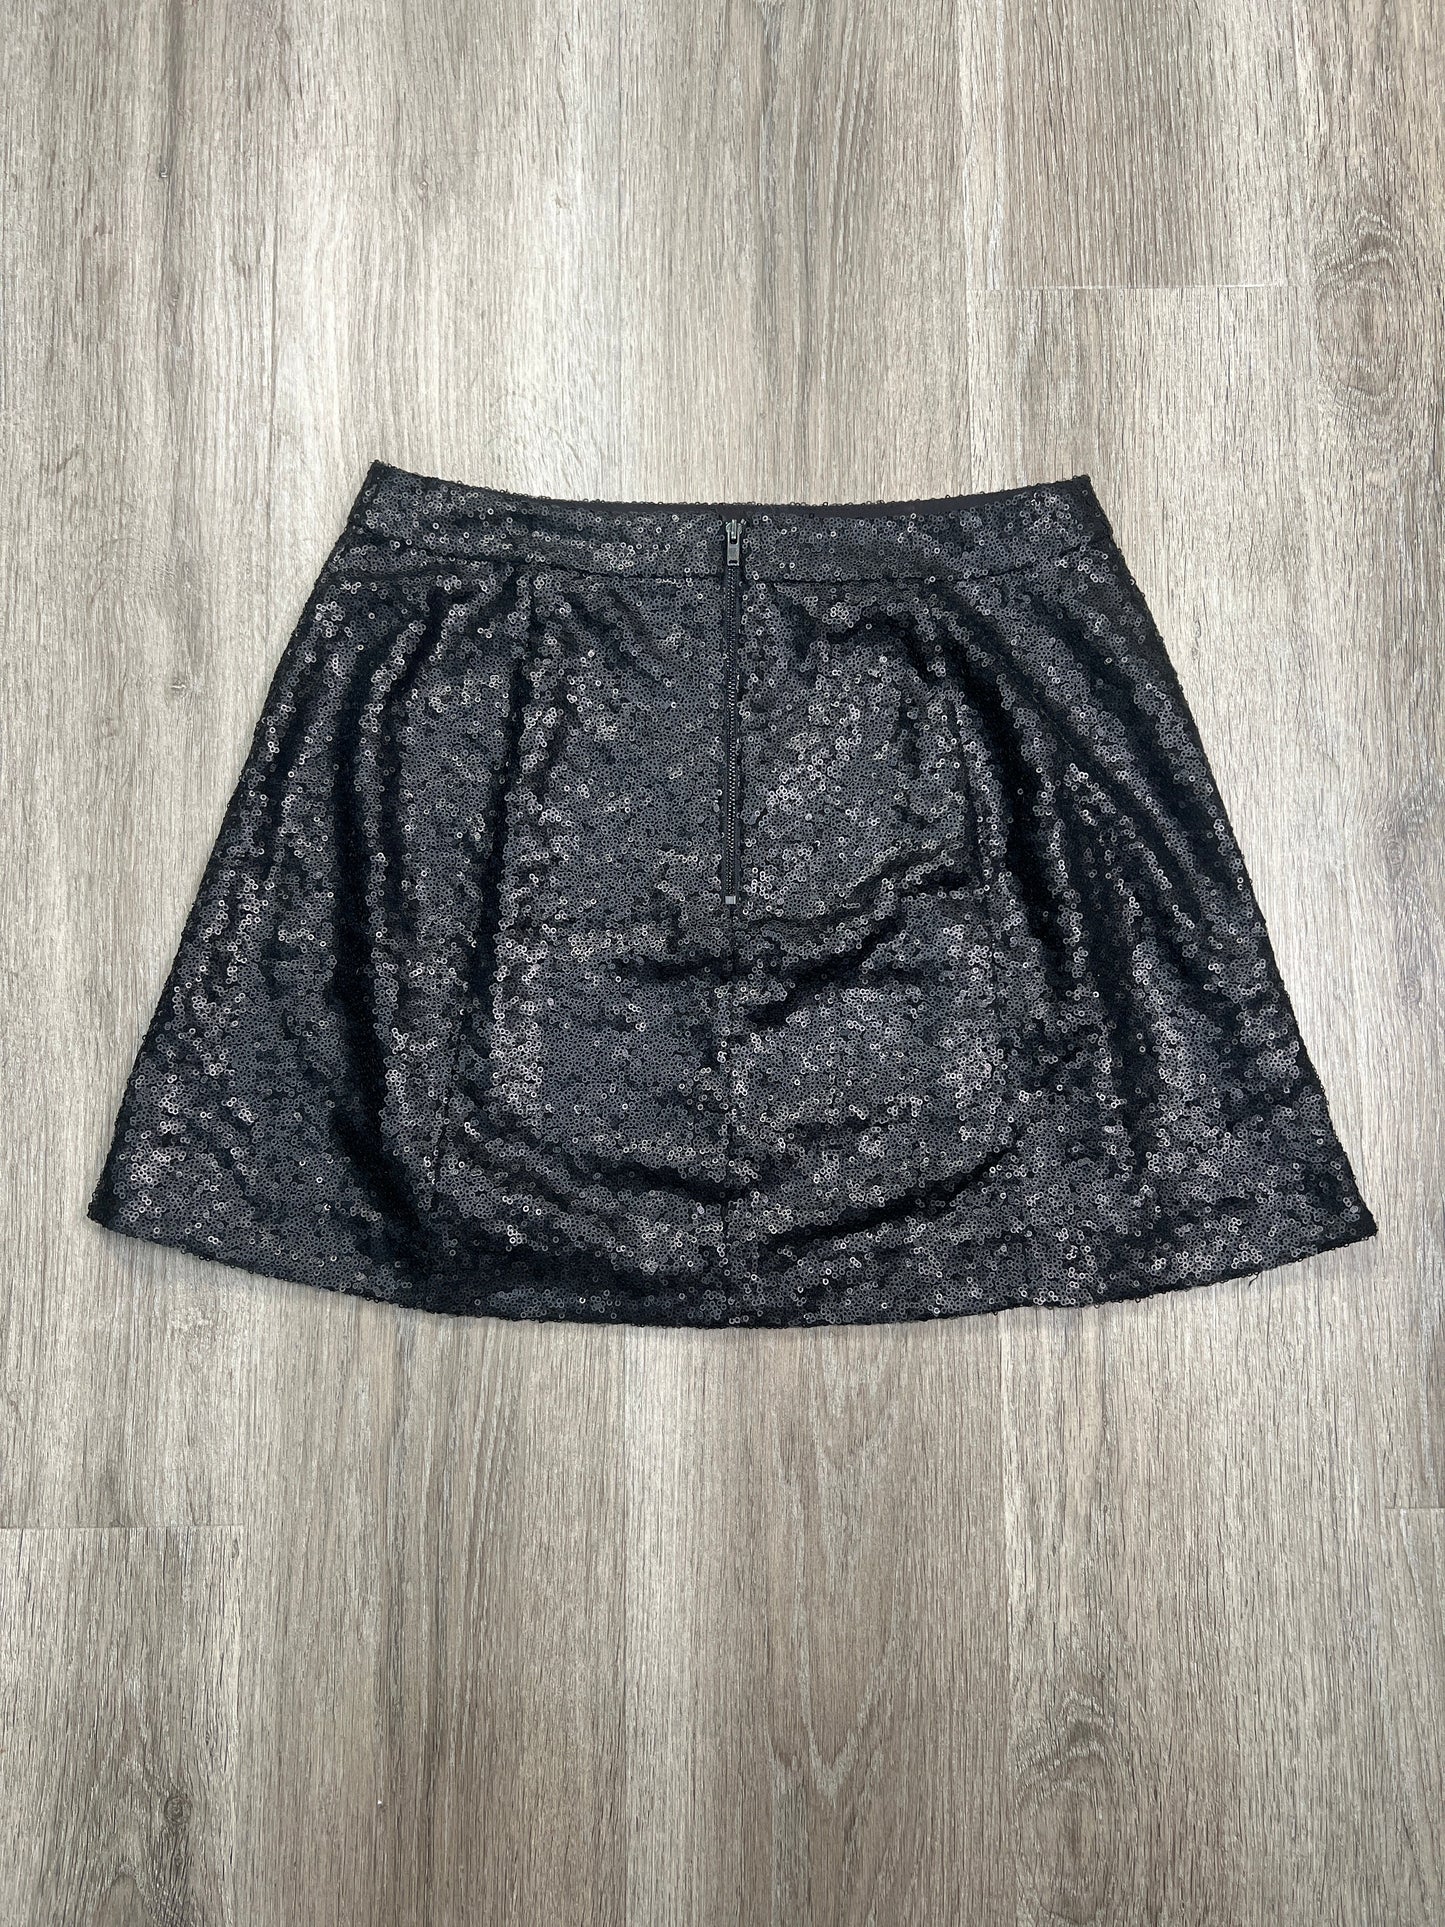 Black Skirt Mini & Short Decree, Size Mini